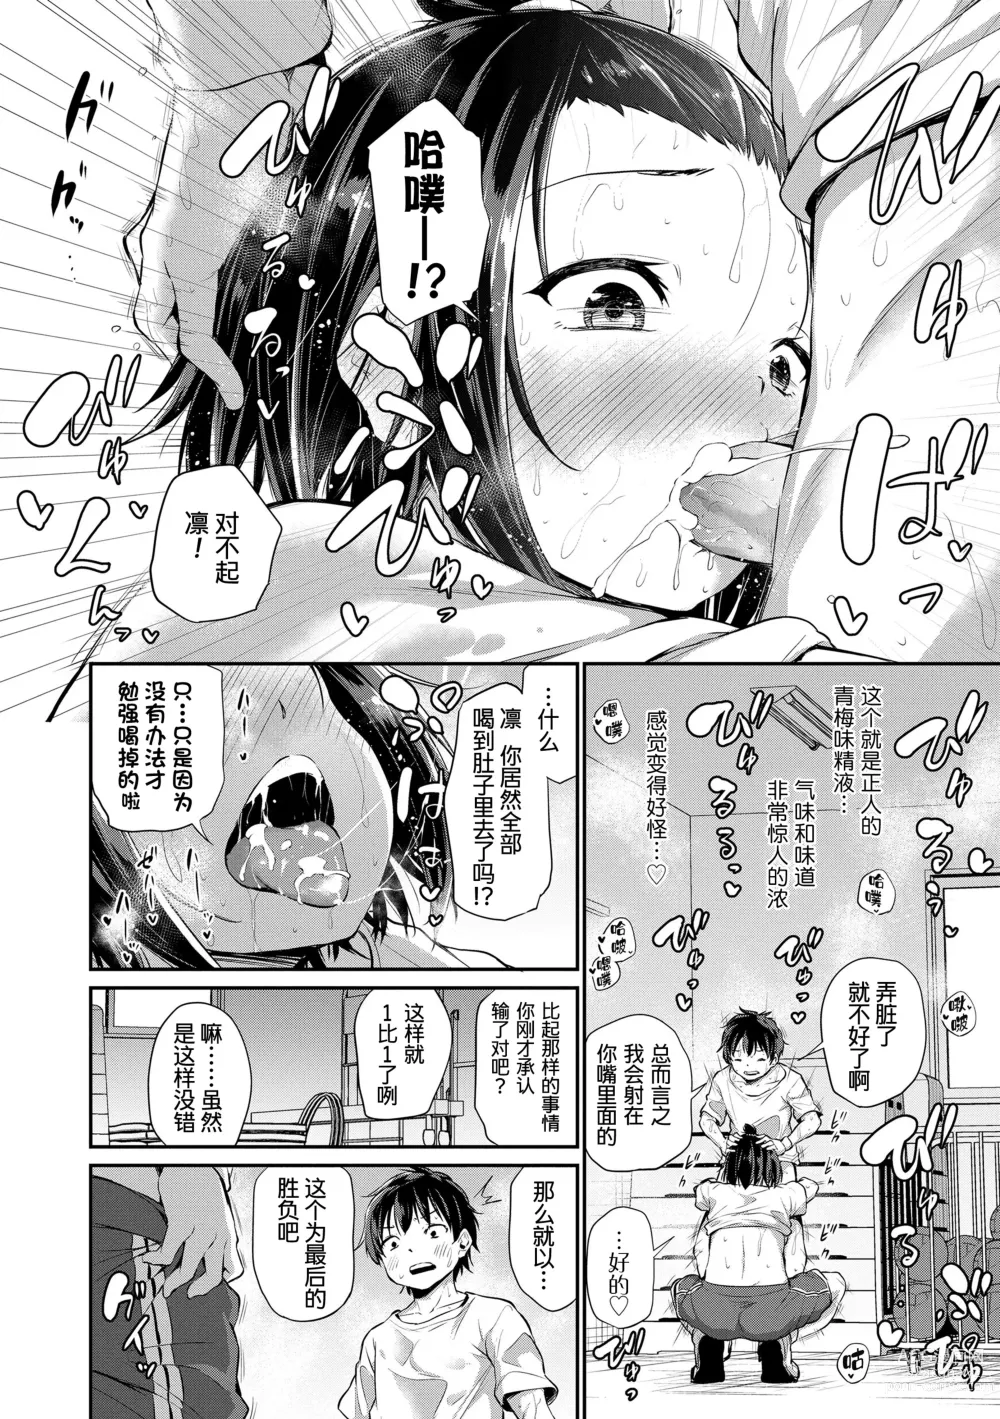 Page 166 of manga Imouto TRIP (decensored)